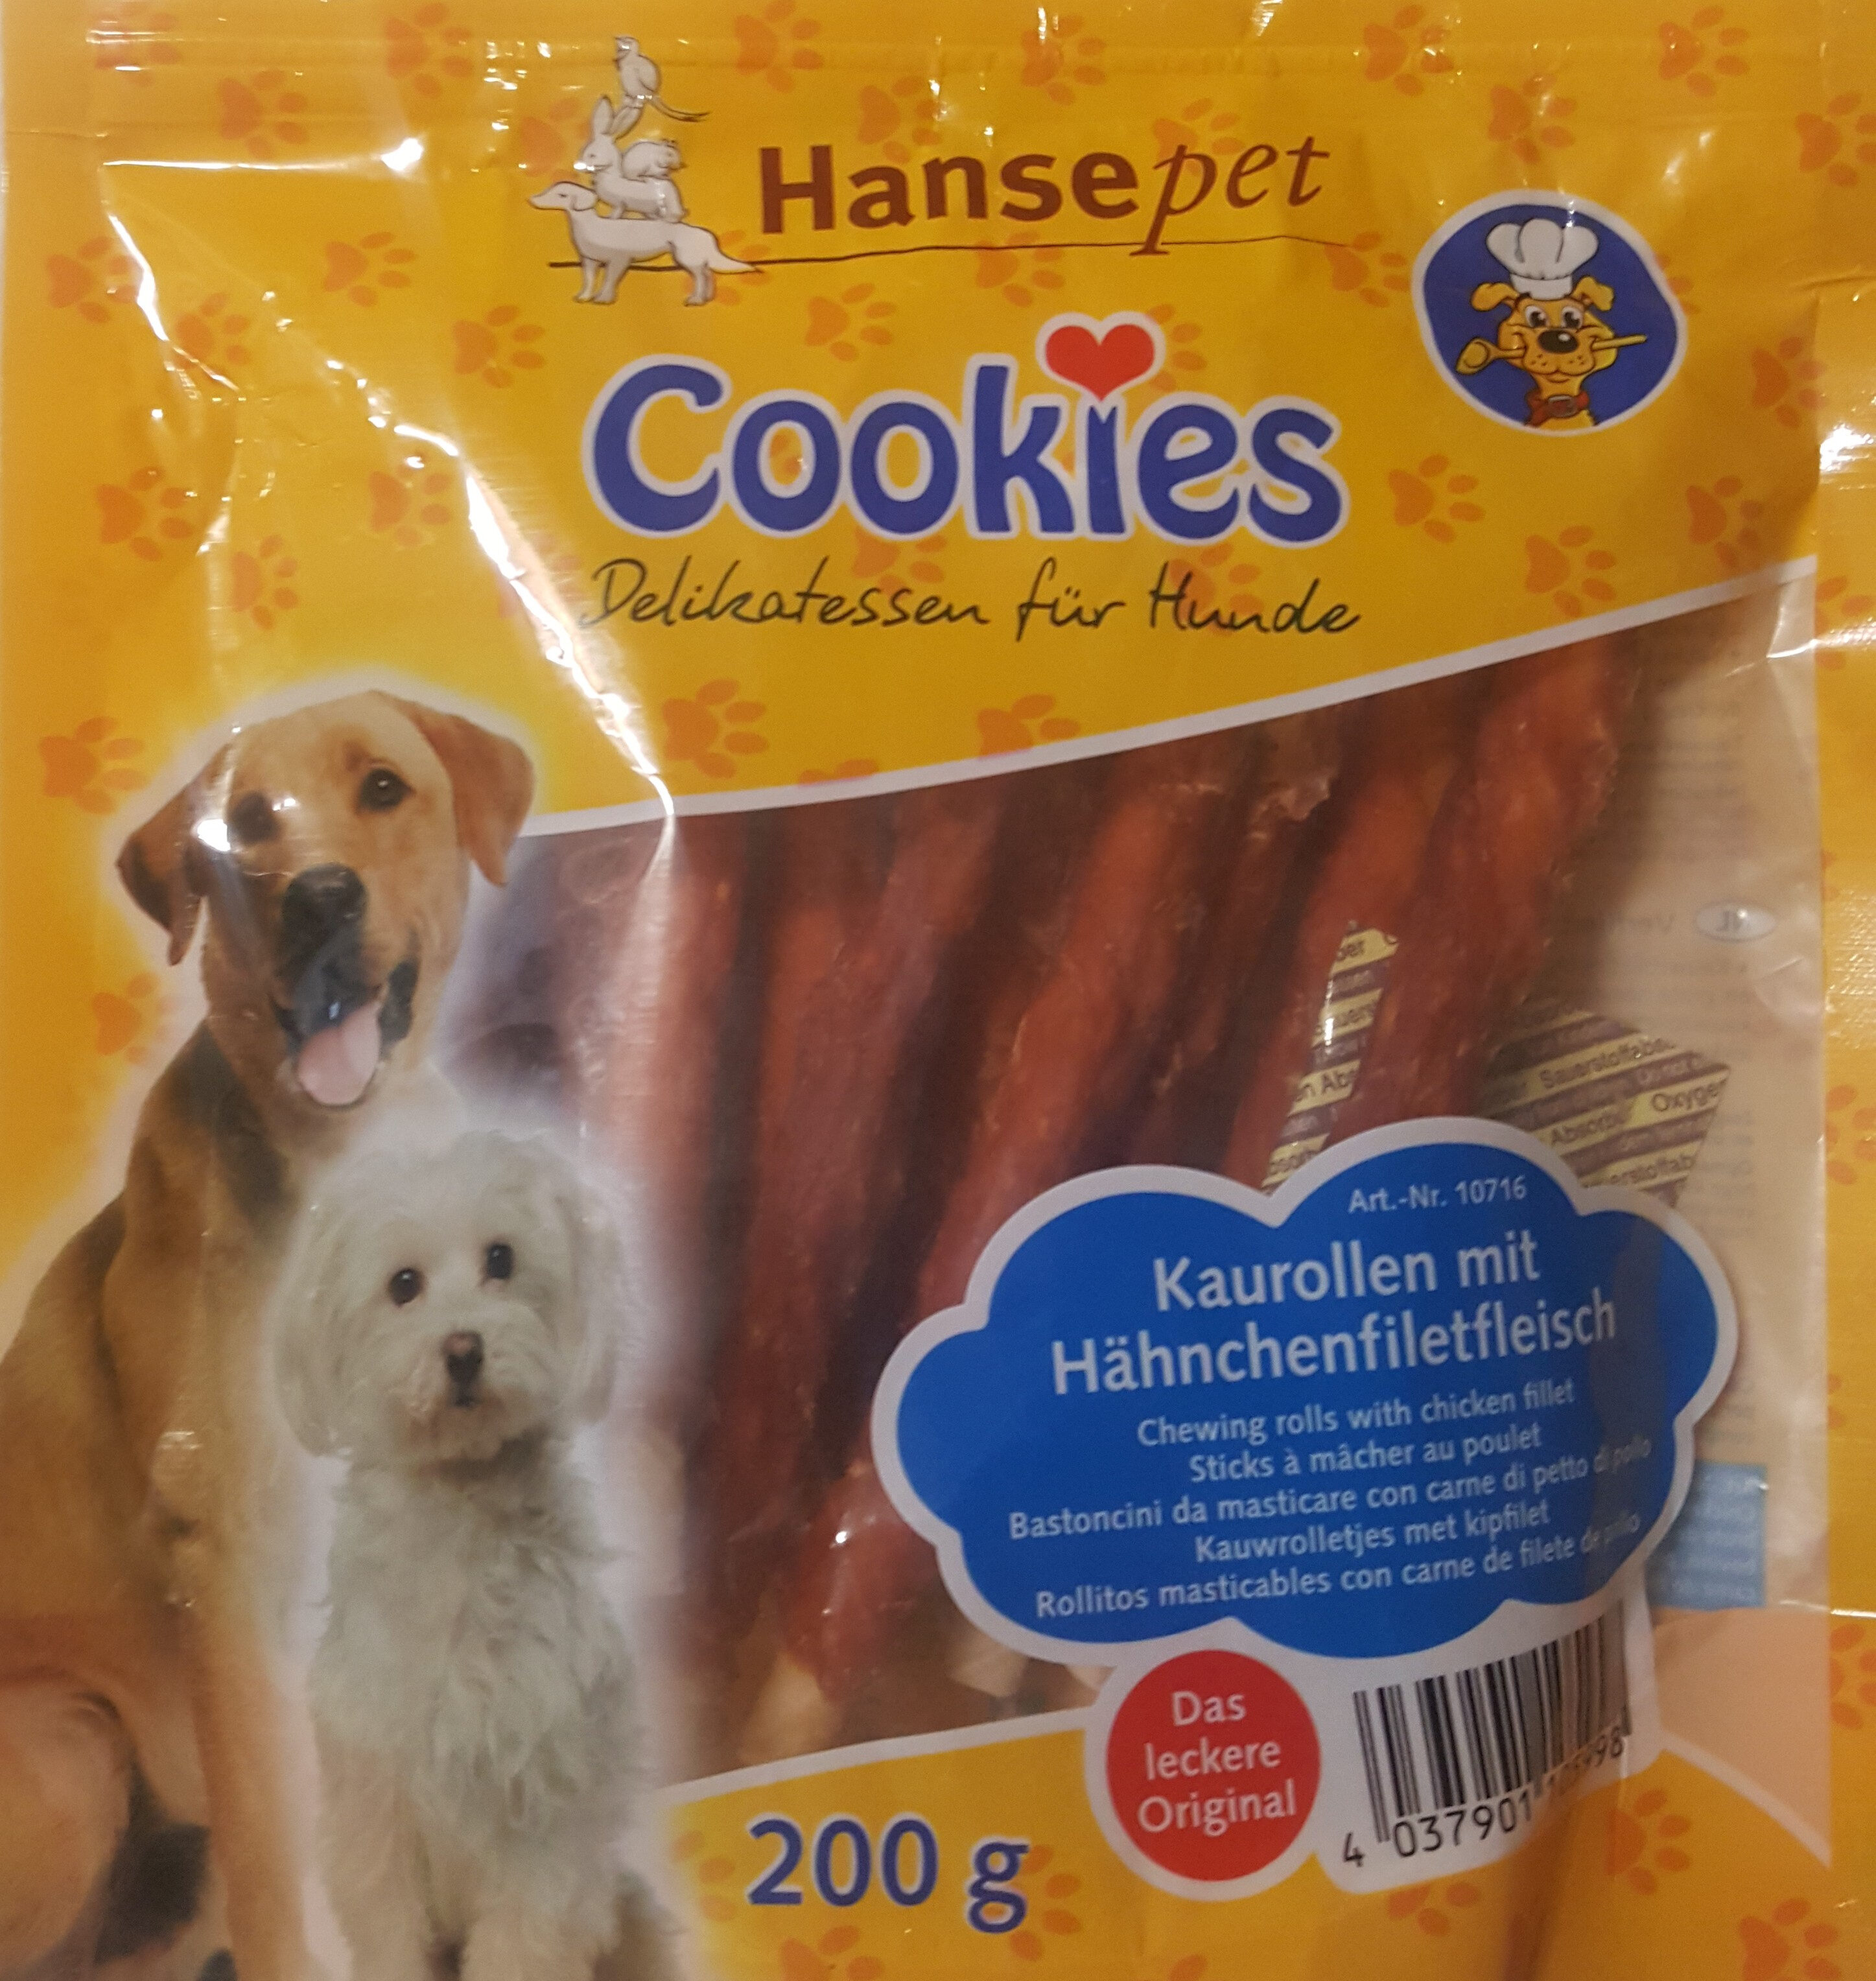 Cookies - Delkatessen für Hunde - Product - de